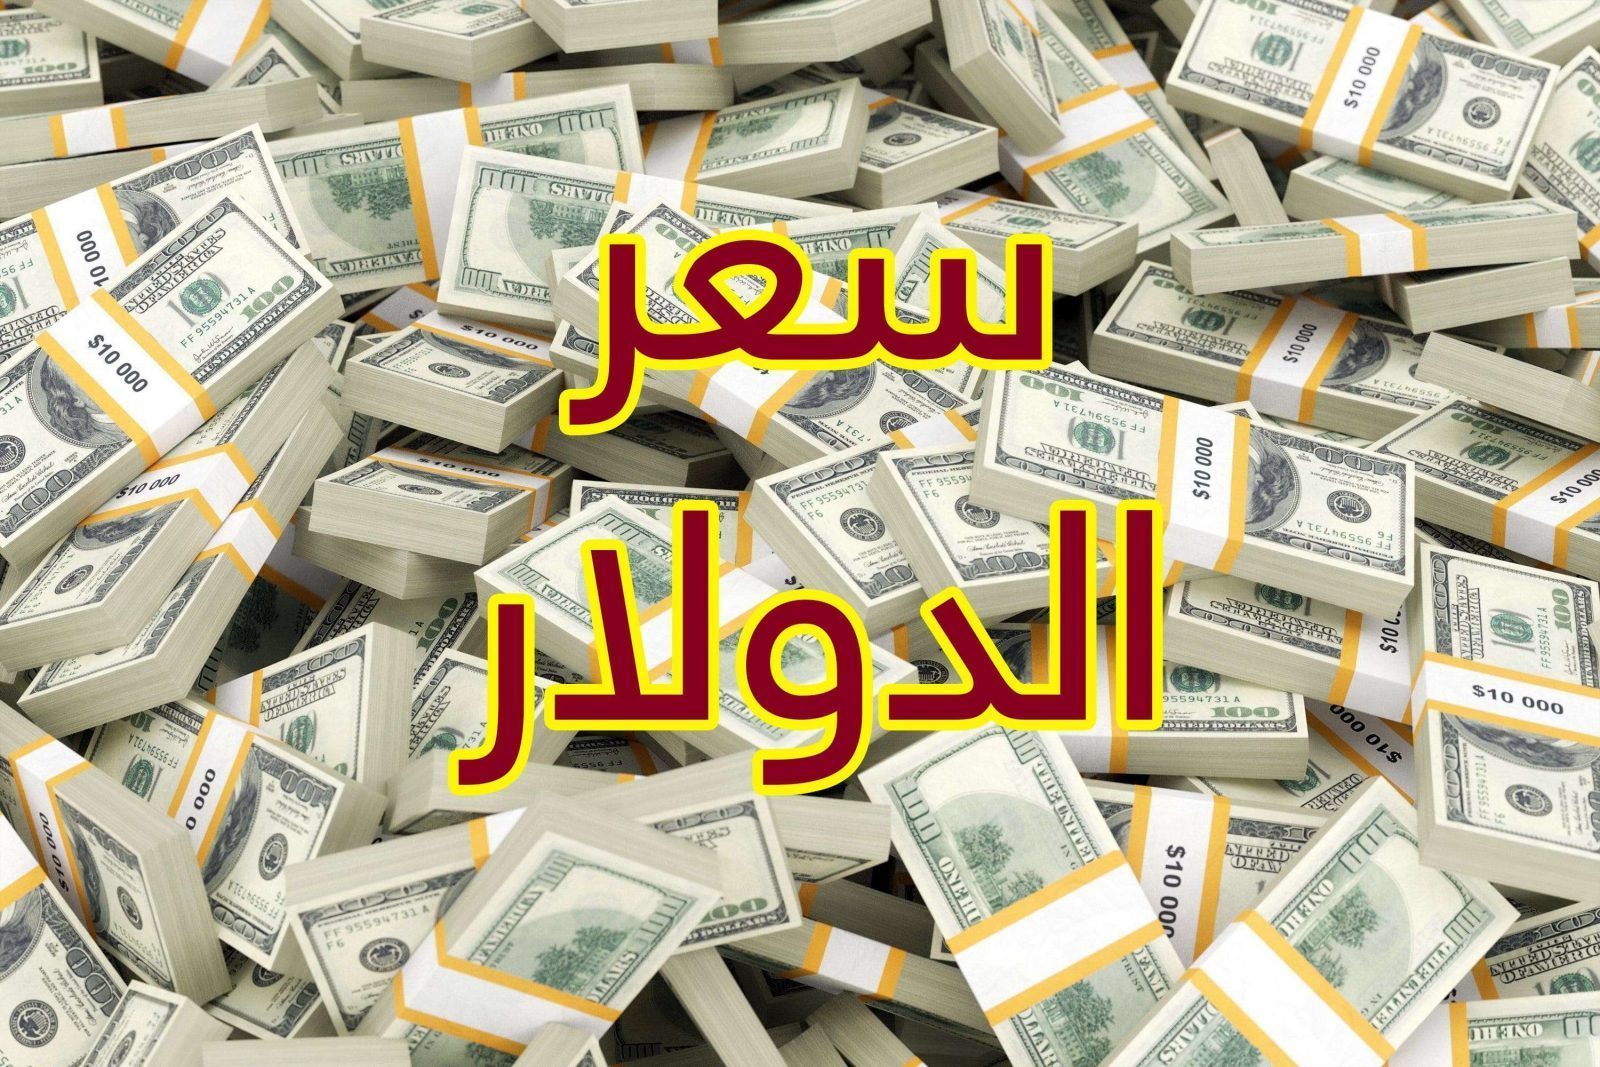 تباين في سعر الدولار اليوم داخل البنوك المصرية من 32.2 إلى 29.65 جنية اعرف أعلى وأقل بنك اليوم